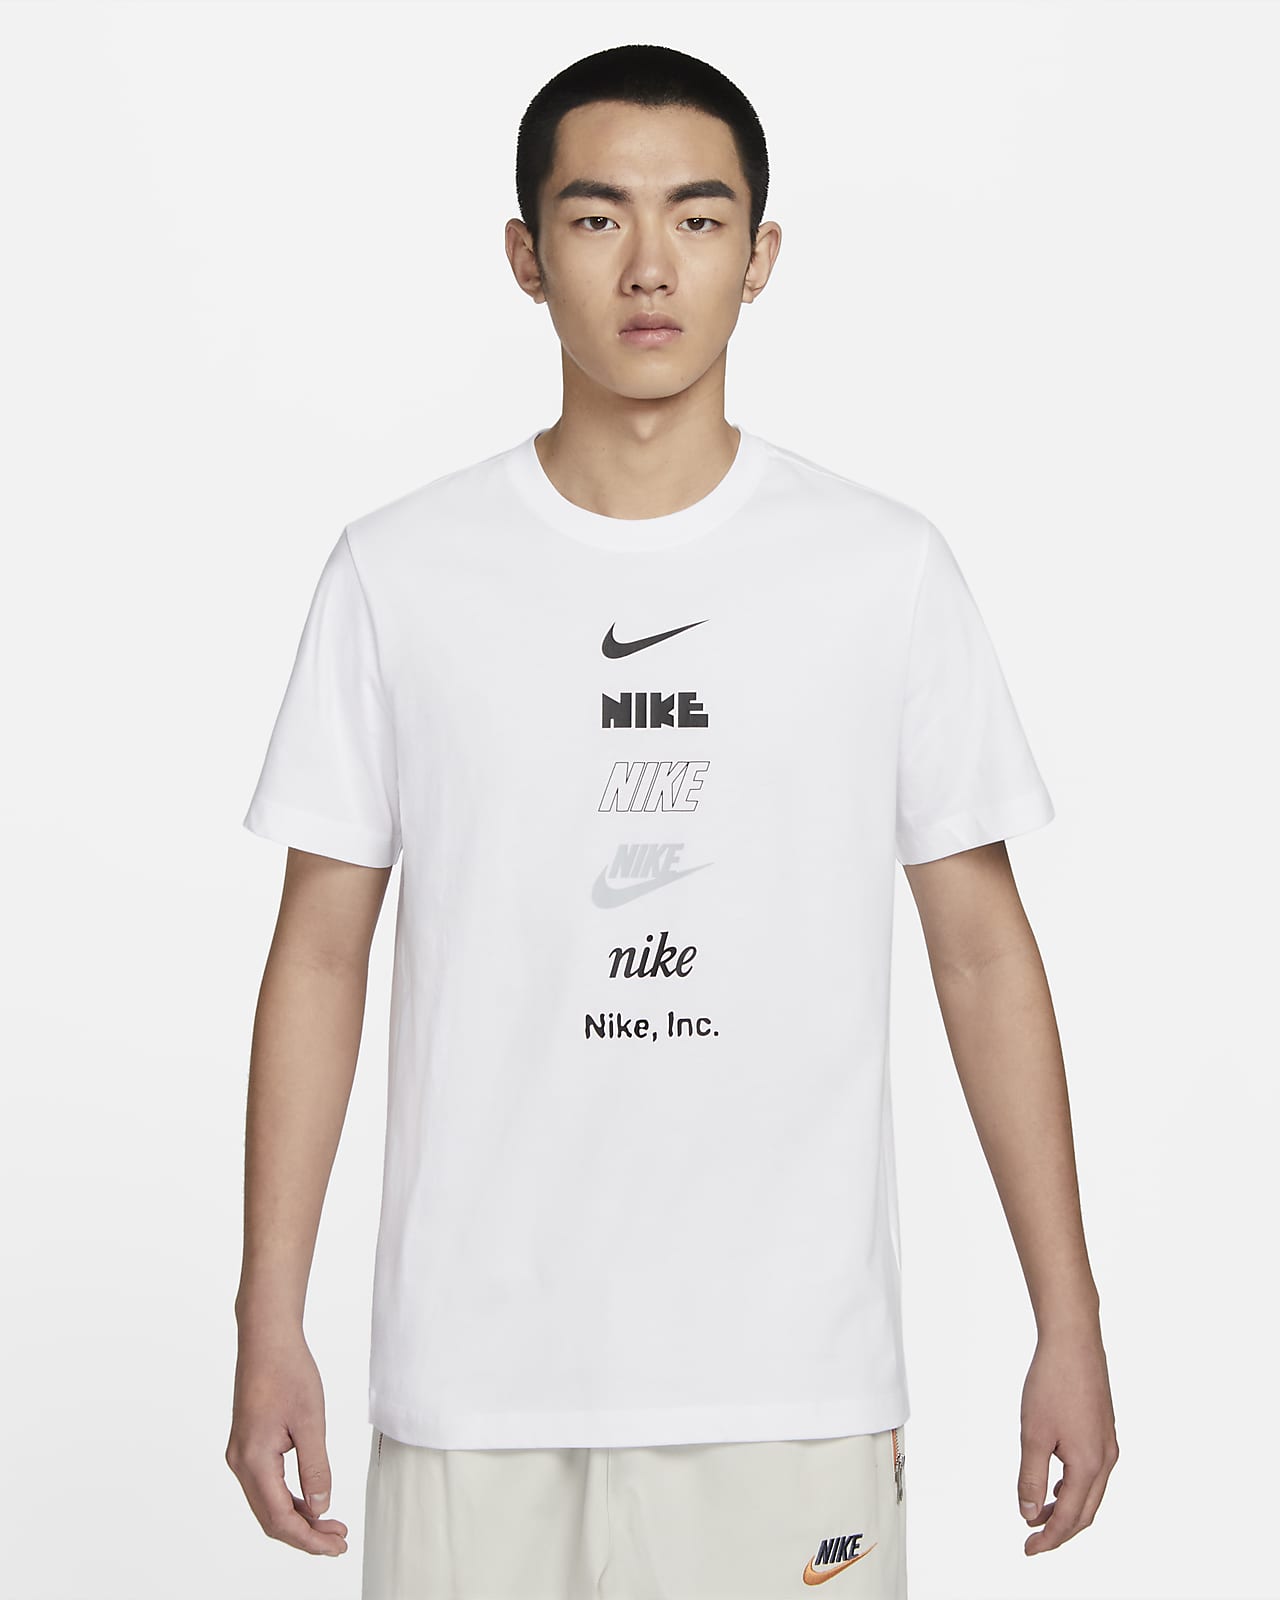 Bier Voorwaarden synoniemenlijst Nike Sportswear Men's T-Shirt. Nike ID